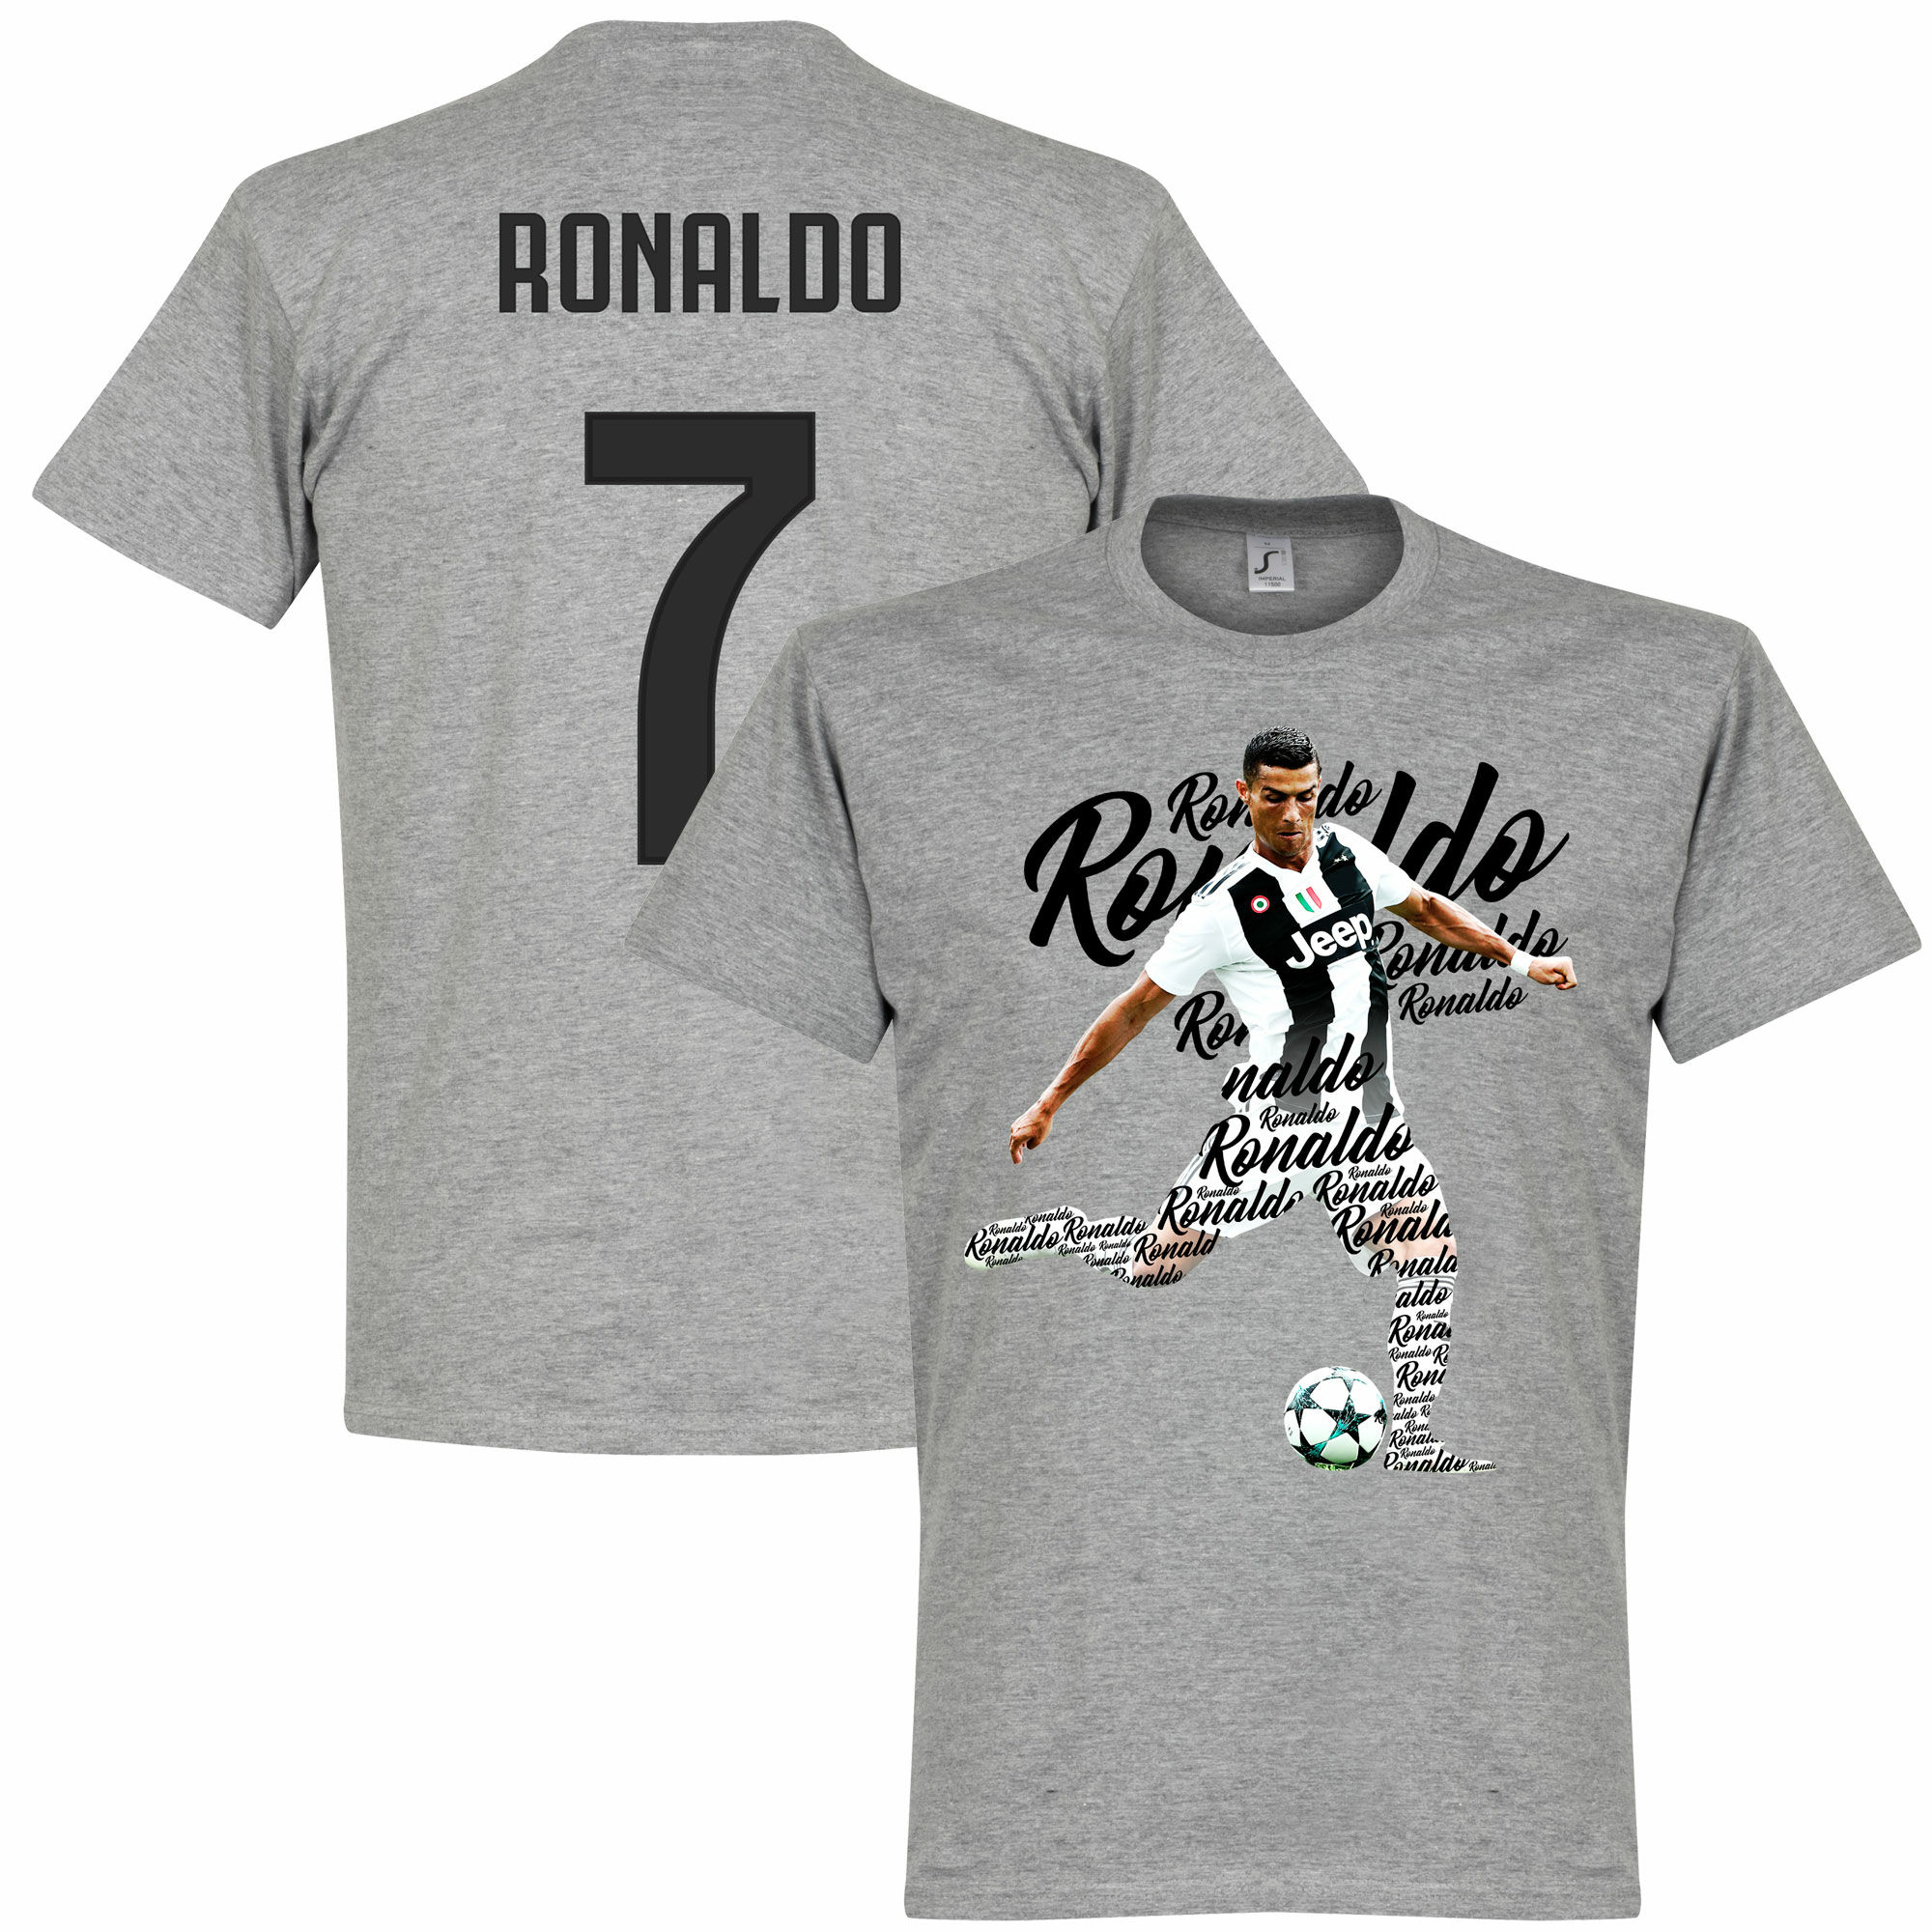 Juventus FC - Tričko "Script" - šedé, Ronaldo, číslo 7